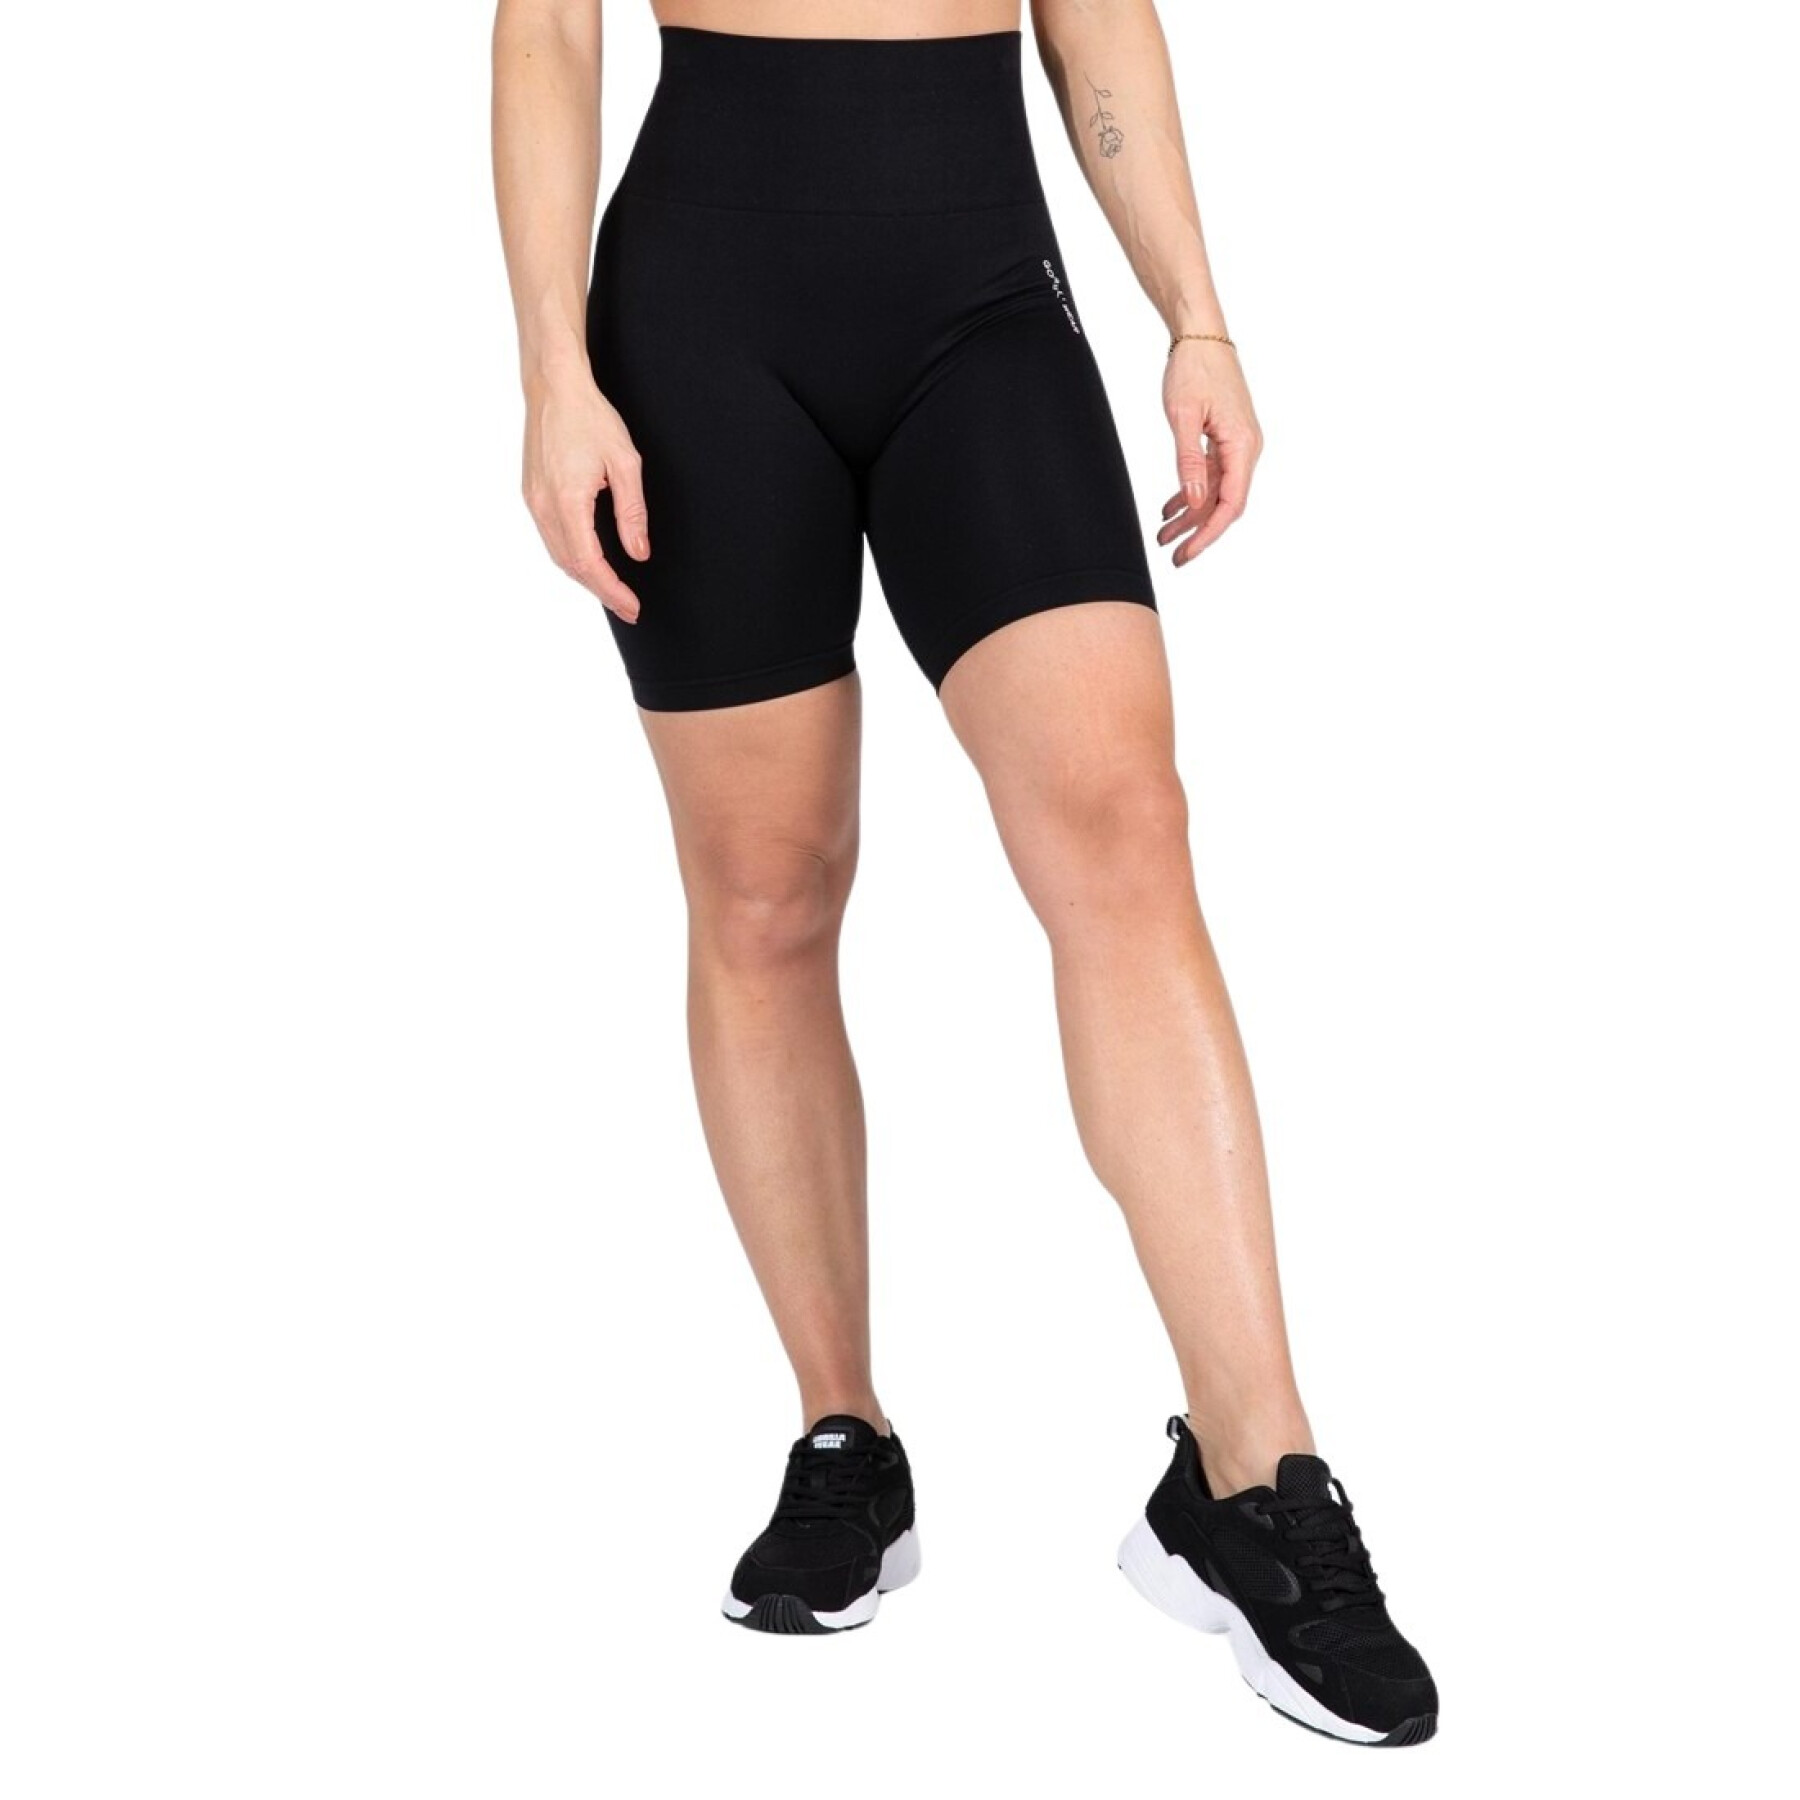 Women's cycling seamless shorts Gorilla Wear Quincy